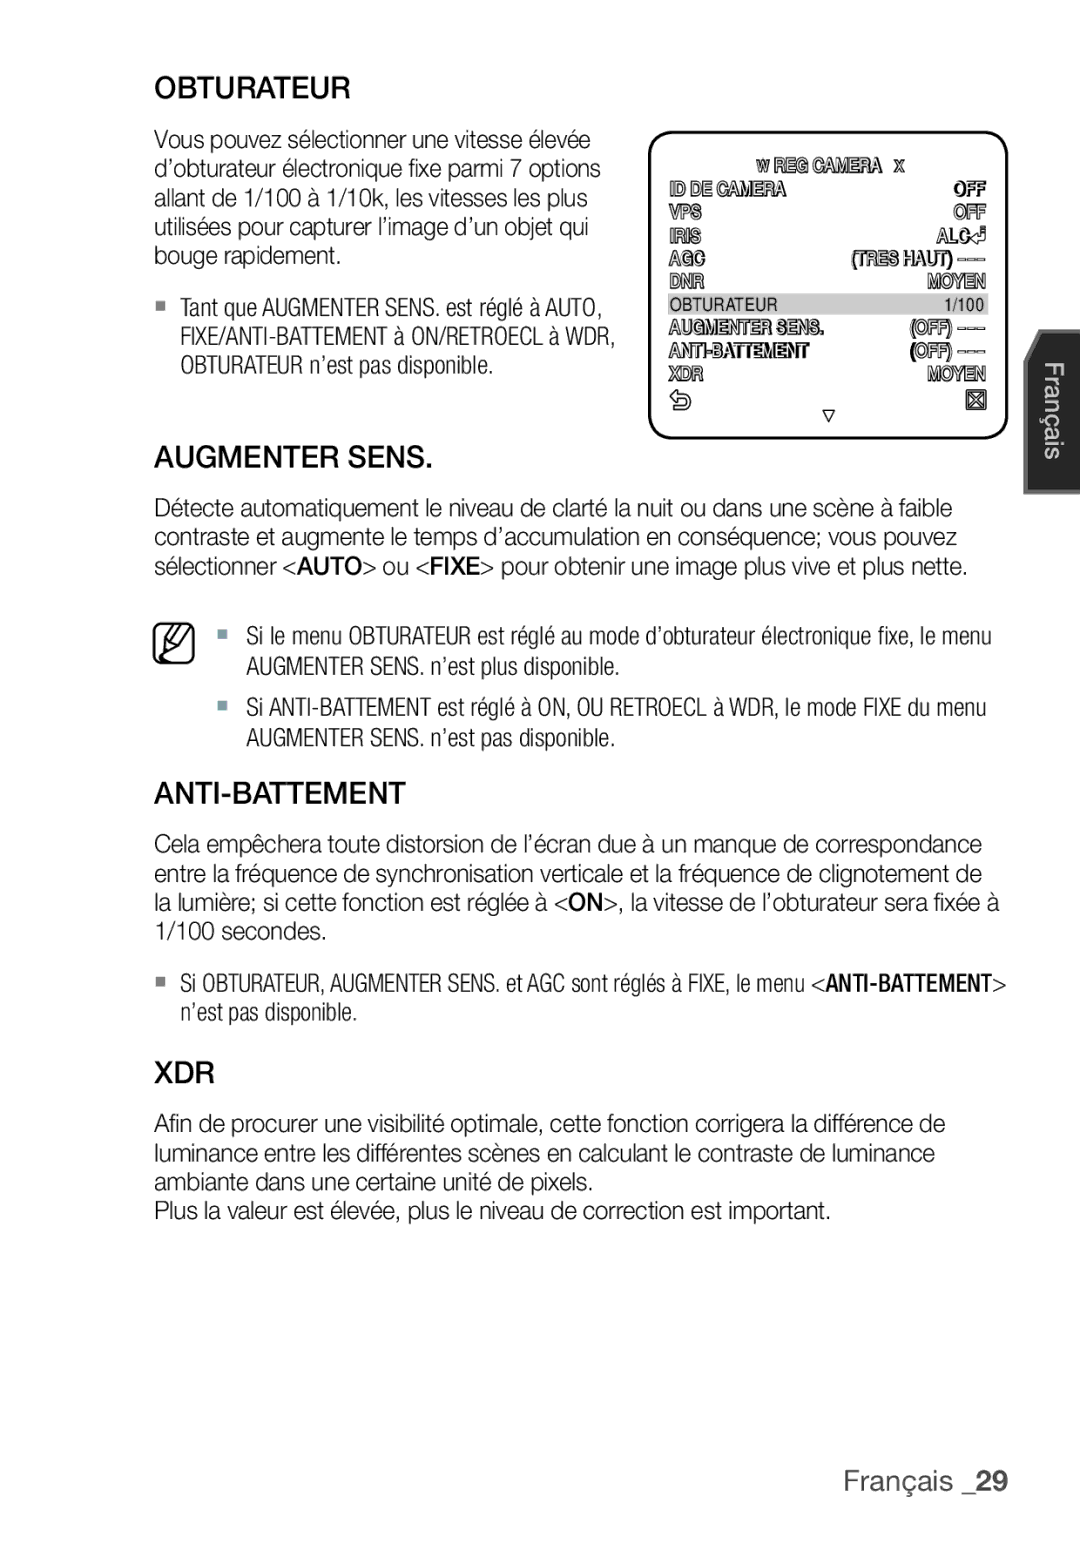 Samsung SCC-C7455P manual Obturateur, Augmenter Sens, Anti-Battement 